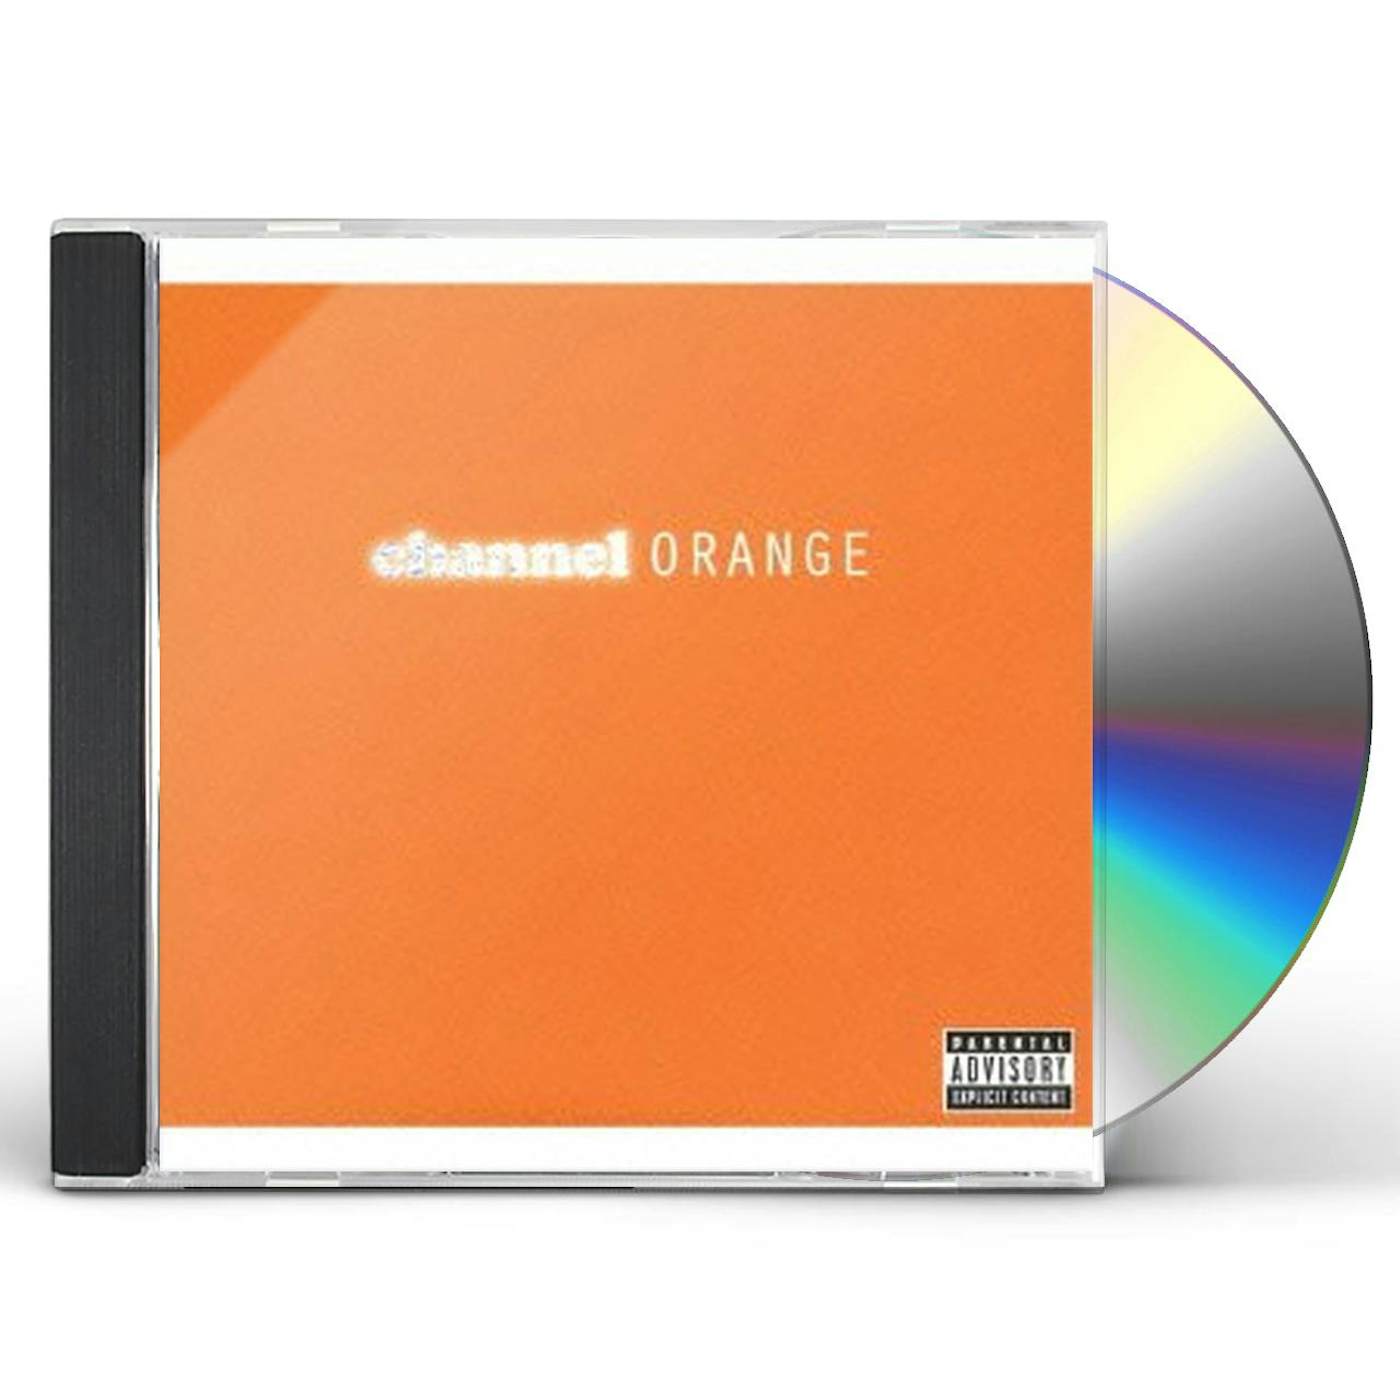 Frank Ocean CHANNEL ORANGE CD $30.49$27.49